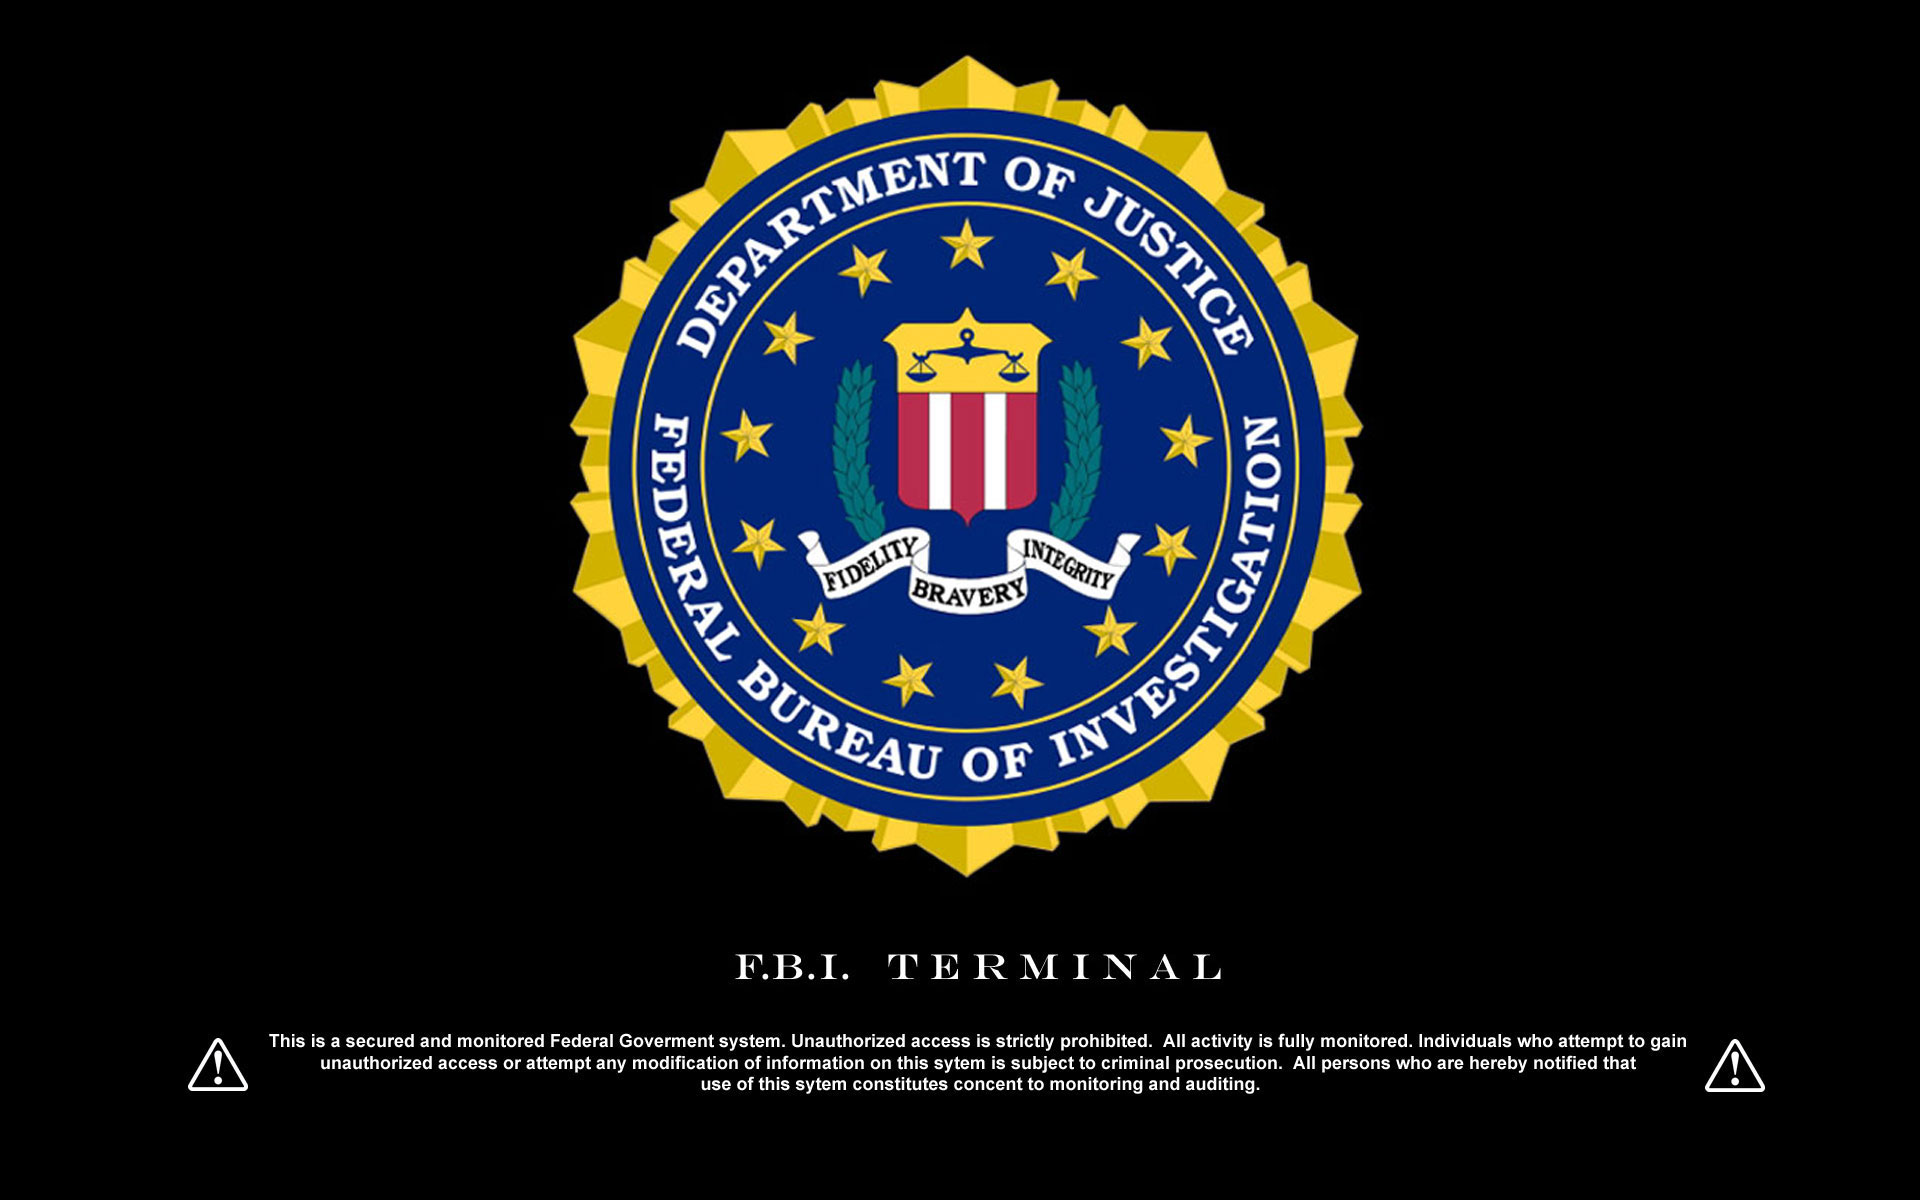 Fbi Logo With Terminal Warning Wallpaper